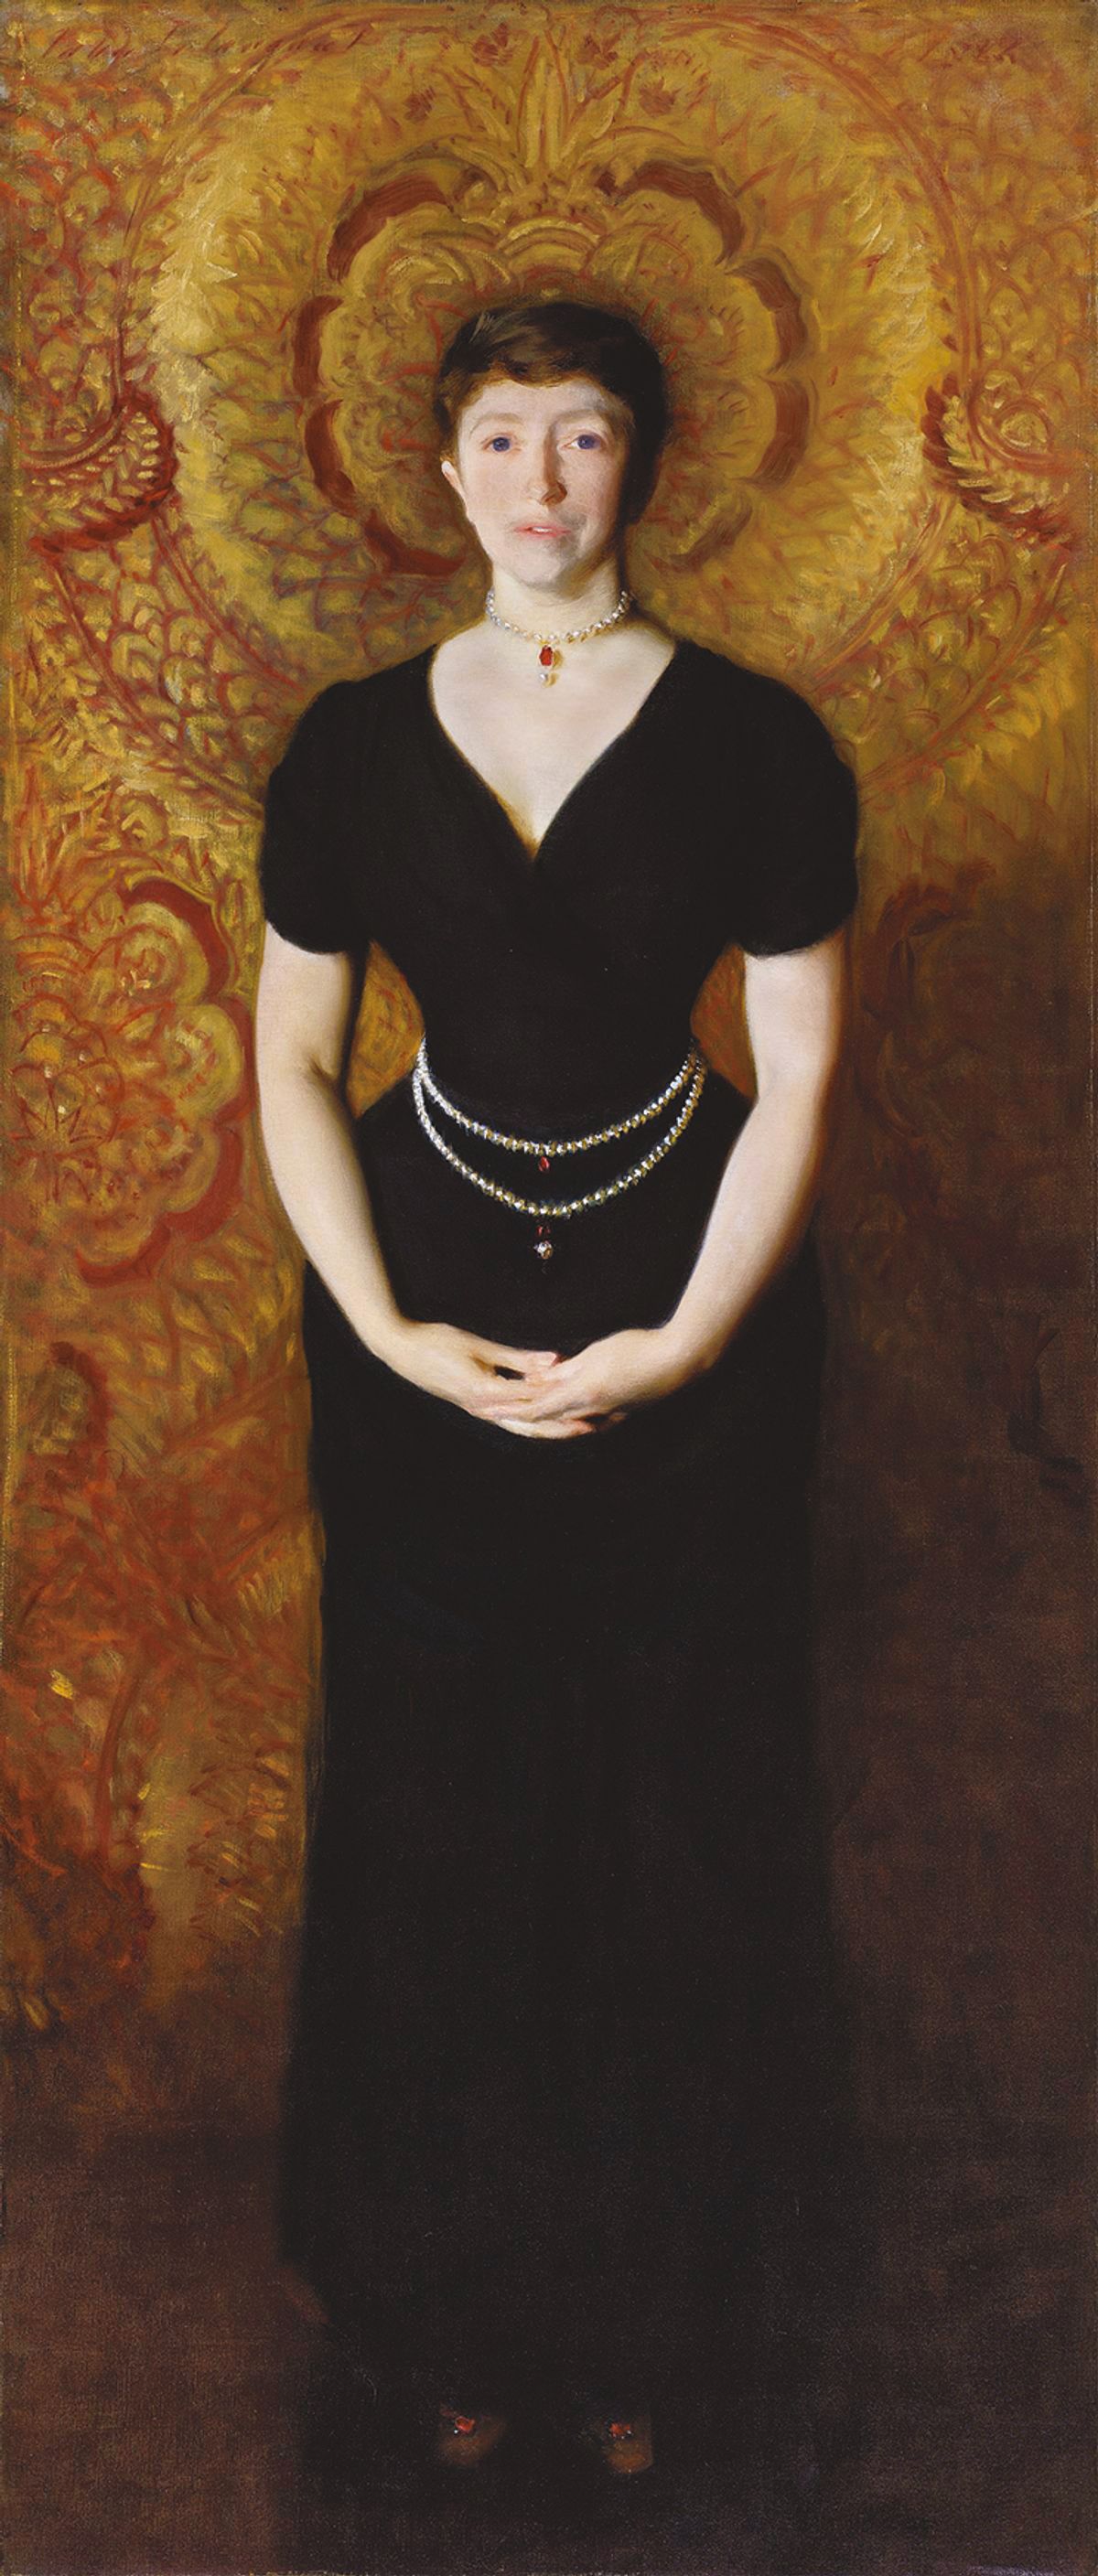 John Singer Sargent’s 1888 portrait of Isabella Stewart Gardner Isabella Stewart Gardner Museum, Boston